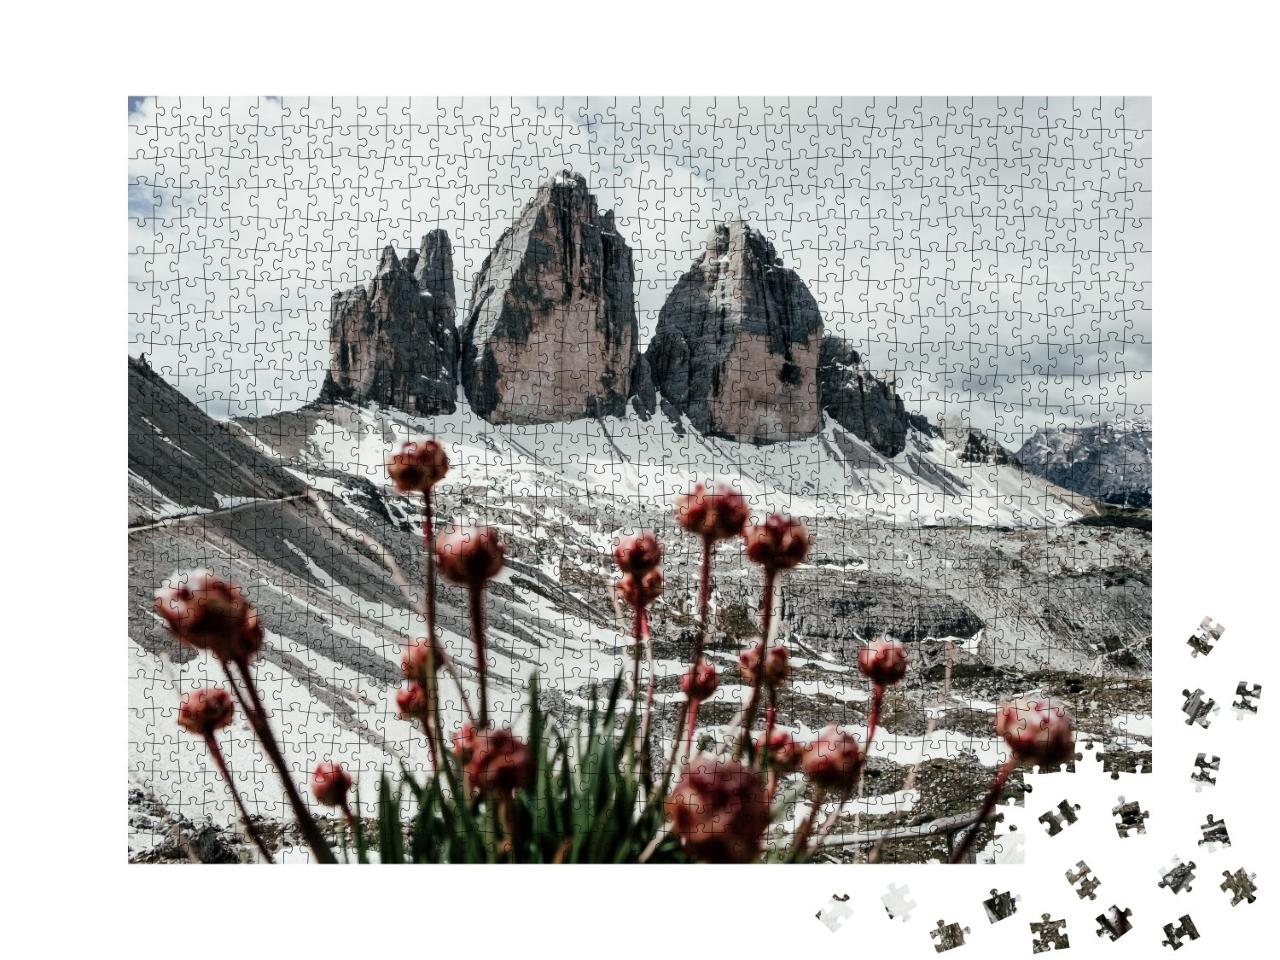 Puzzle de 1000 pièces « Les Trois Cimets en Italie, Dolomites »